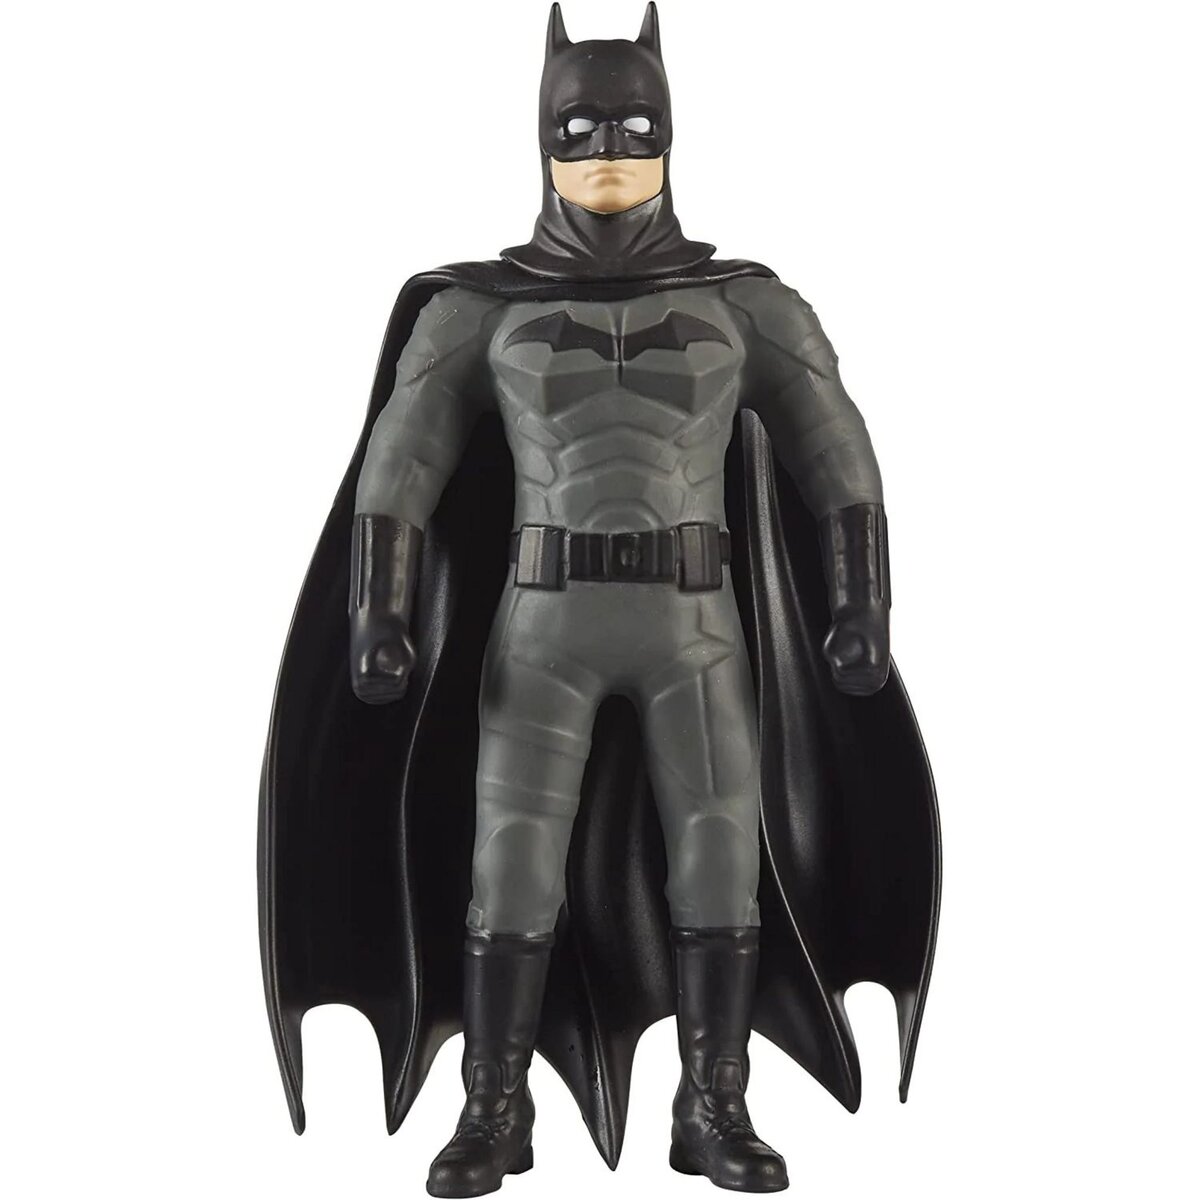 LANSAY Véhicule Batmobile 1989 et figurine Batman 18 cm DC Comics